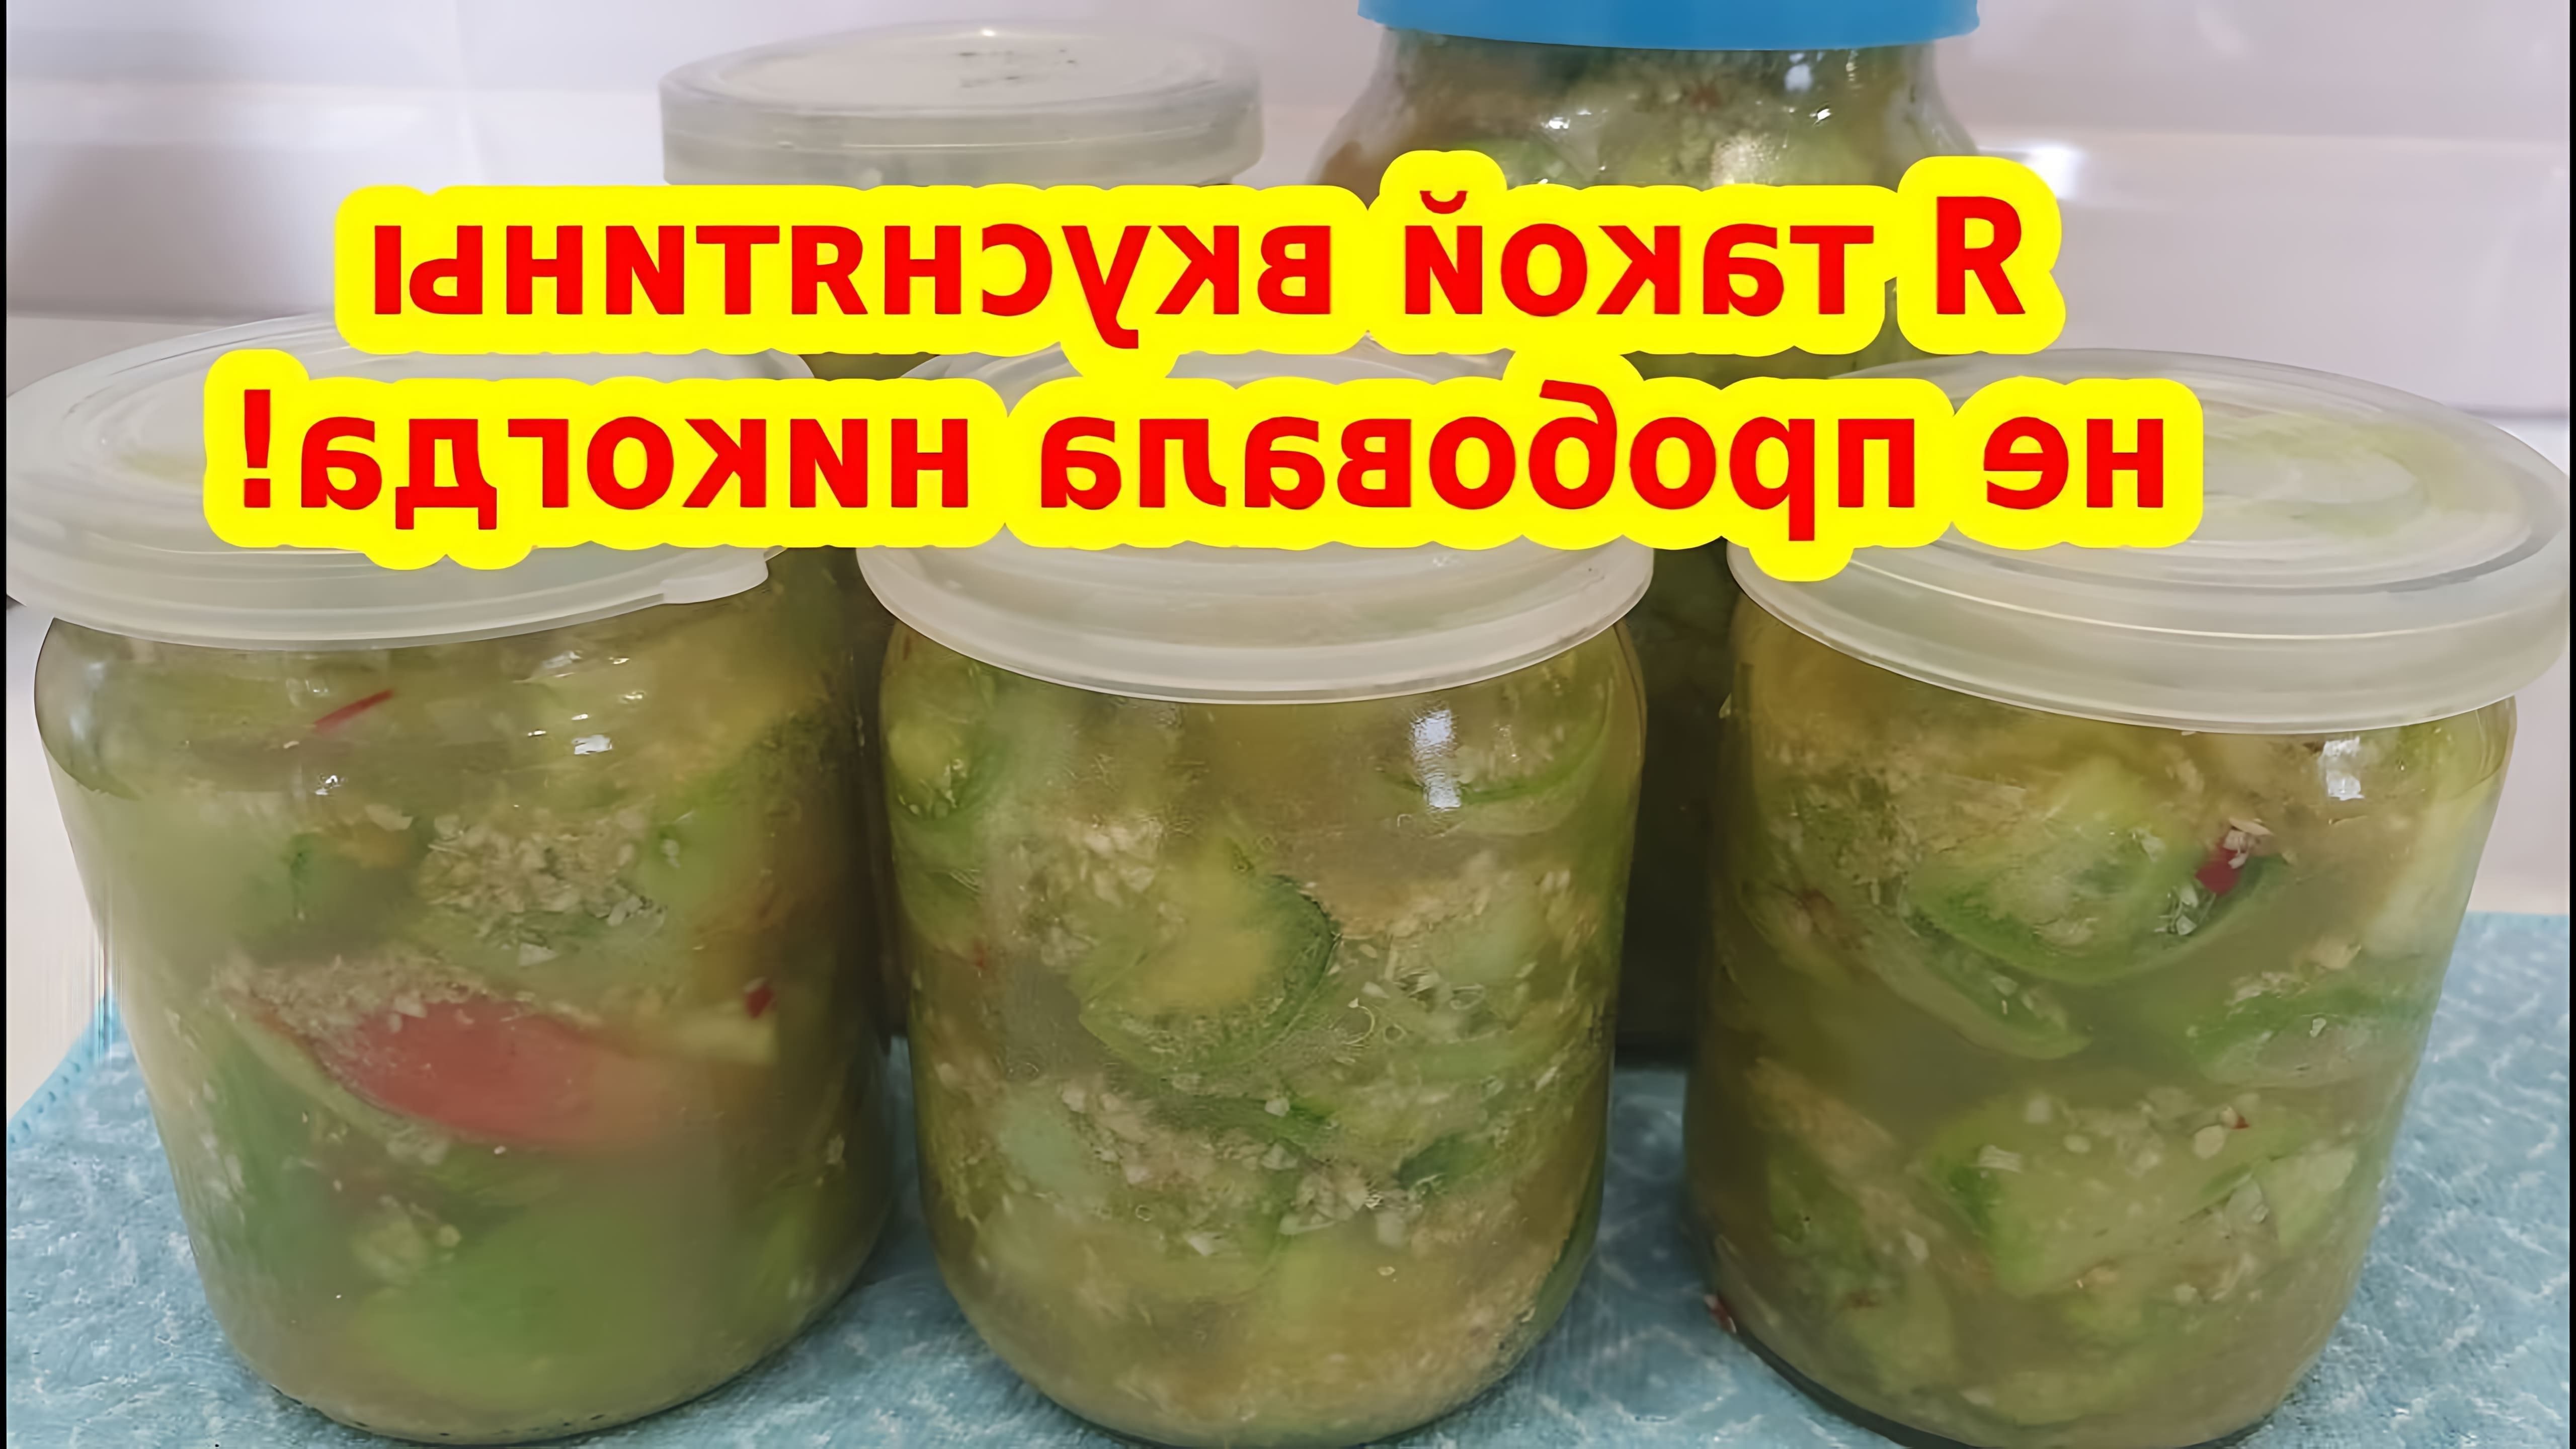 В этом видео демонстрируется рецепт приготовления закуски из зеленых помидор, хрена и чеснока